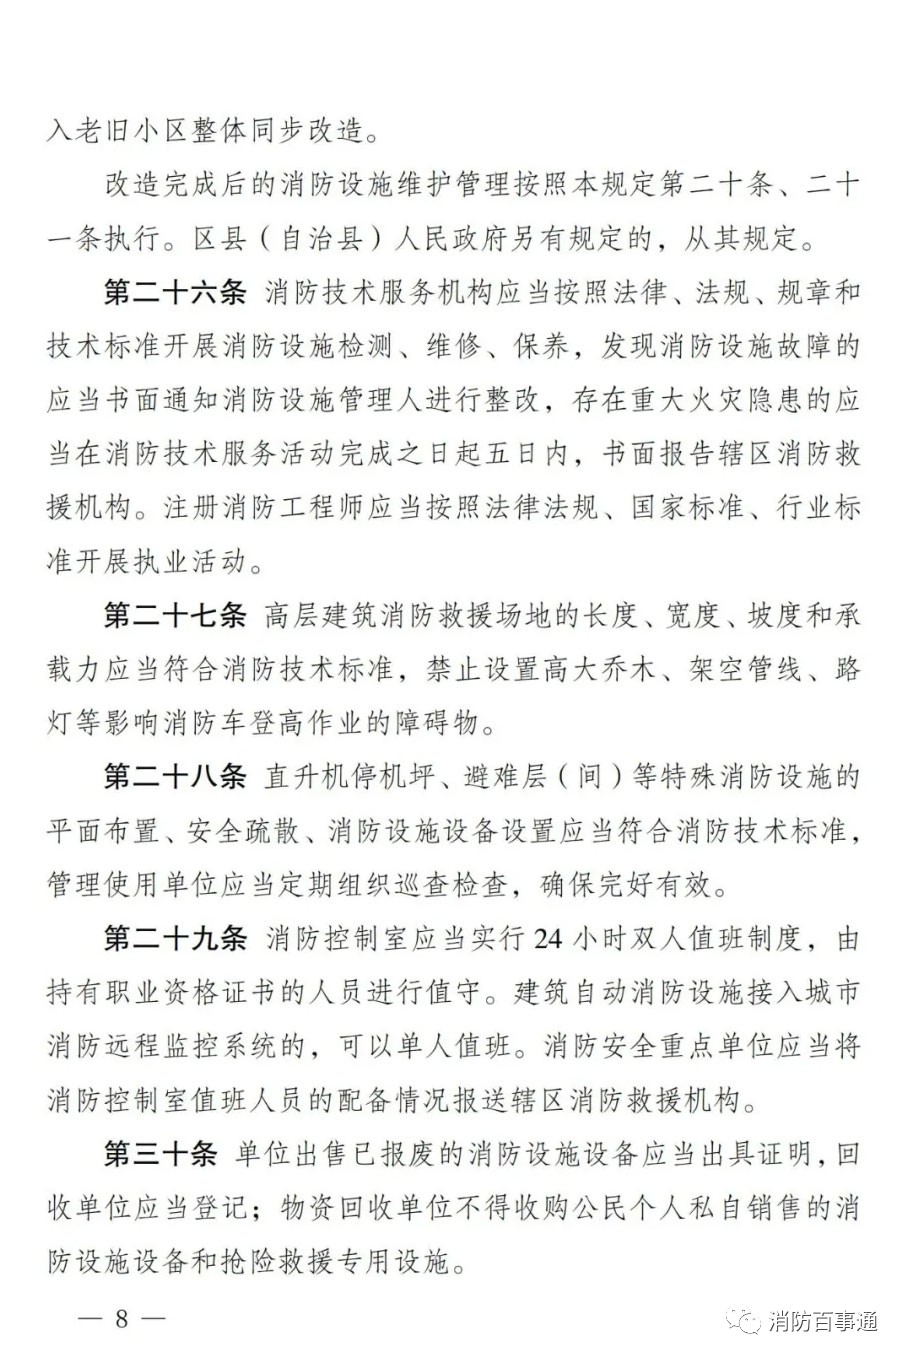 重庆市消防救援总队关于公开征求《重庆市消防设施管理规定（修订草案征求意见稿）》意见的通告